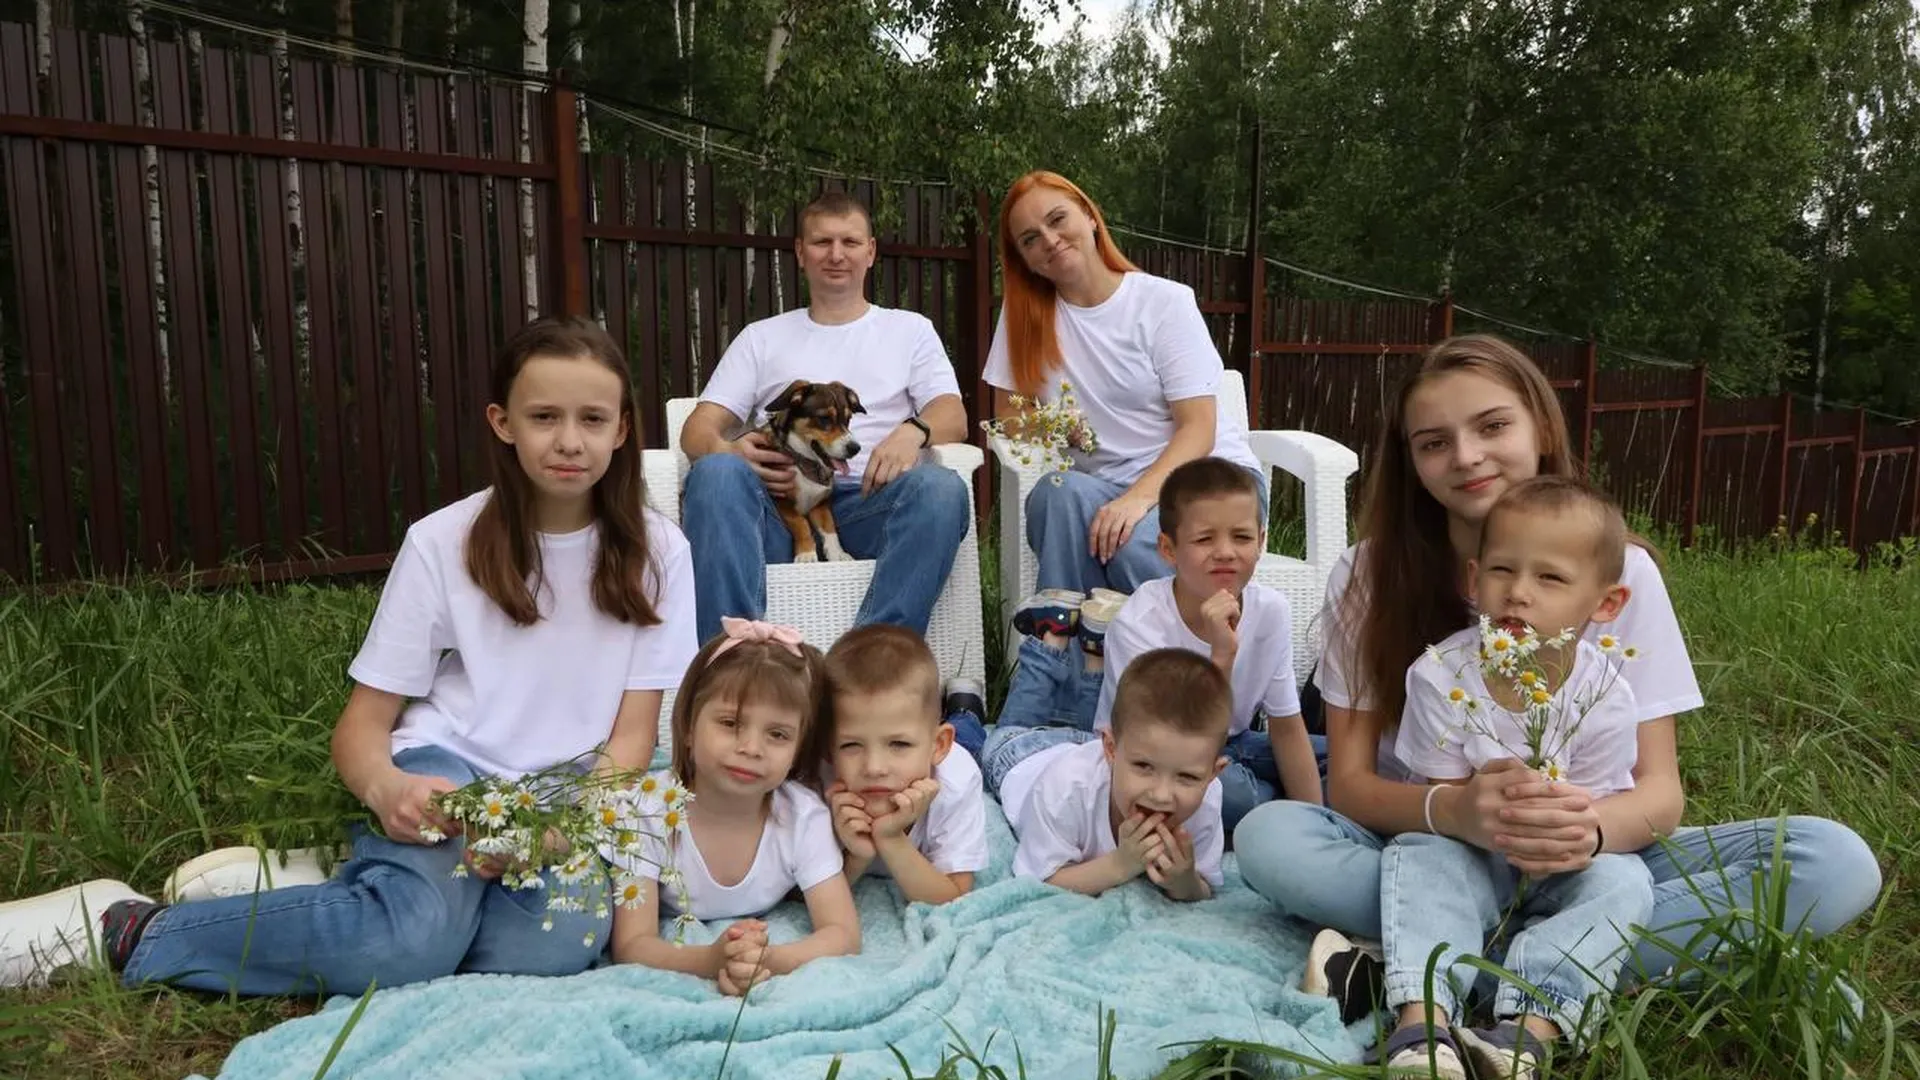 Семейный заезд в детском лагере «Литвиново» организуют в мае